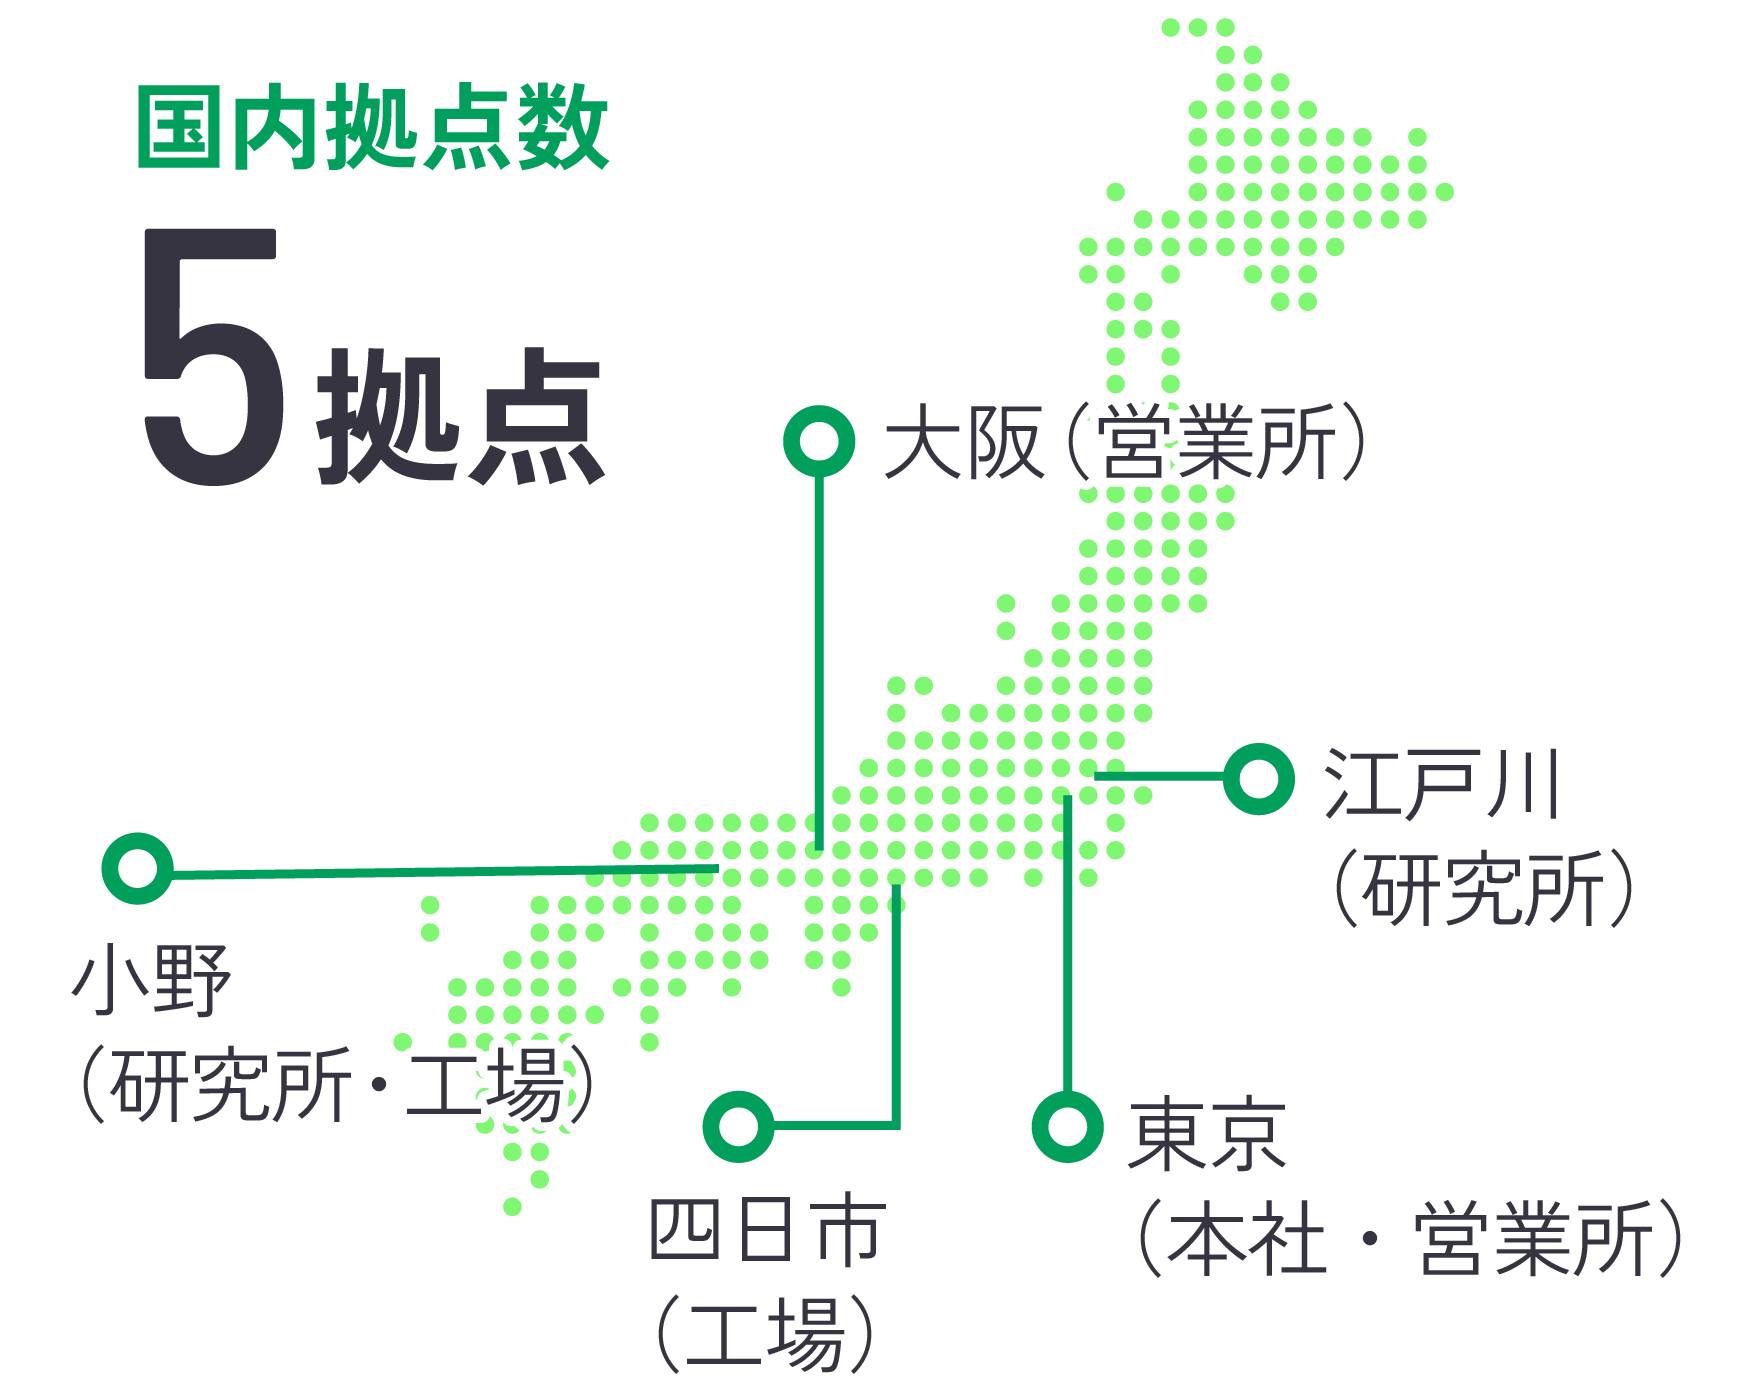 国内拠点数 5拠点 大阪、東京、平井、小野、四日市